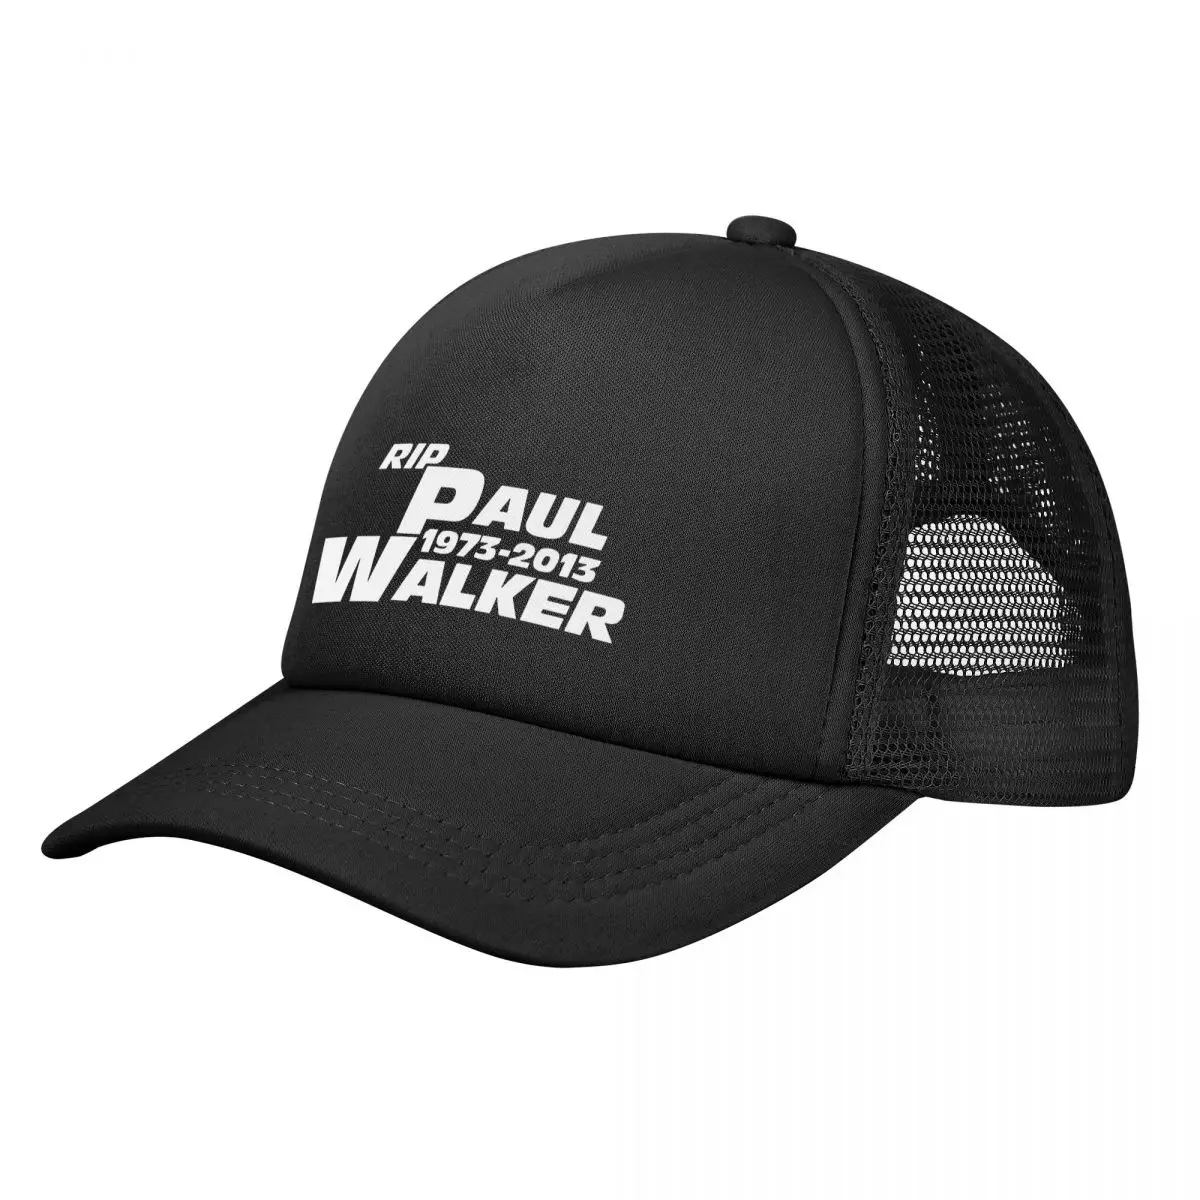 

Бейсболка Rip Paul Walker в стиле форсаж, Кепка для бега, кепки для гольфа, мужские кепки для пиклебола, шапка для мужчин и женщин, защита от солнца